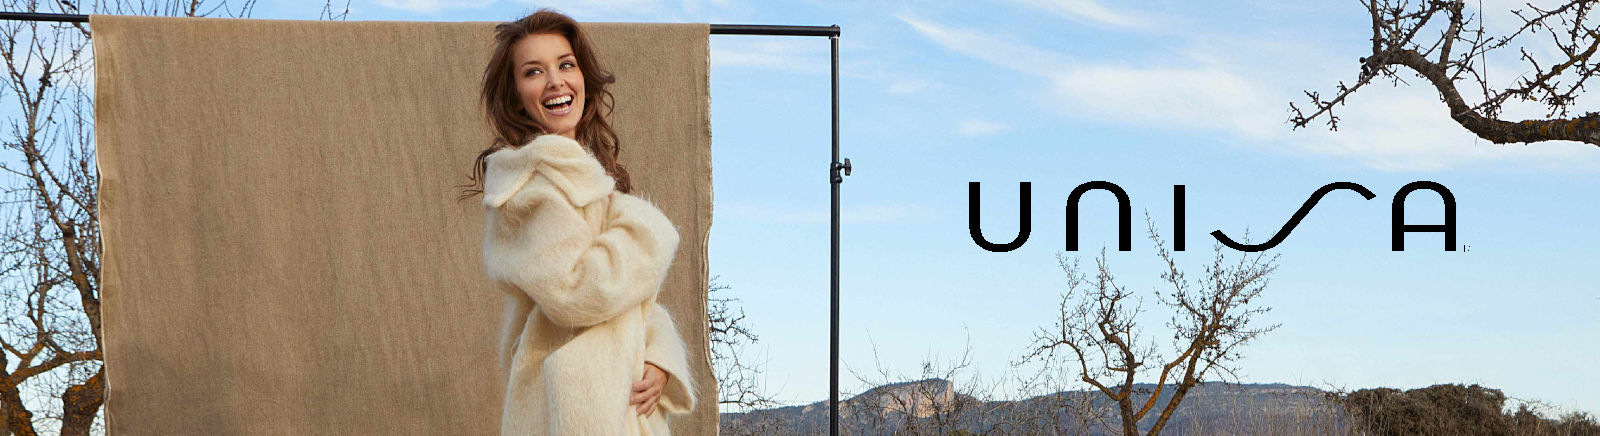 Juppen: Unisa Plateau-Stiefeletten für Damen online shoppen